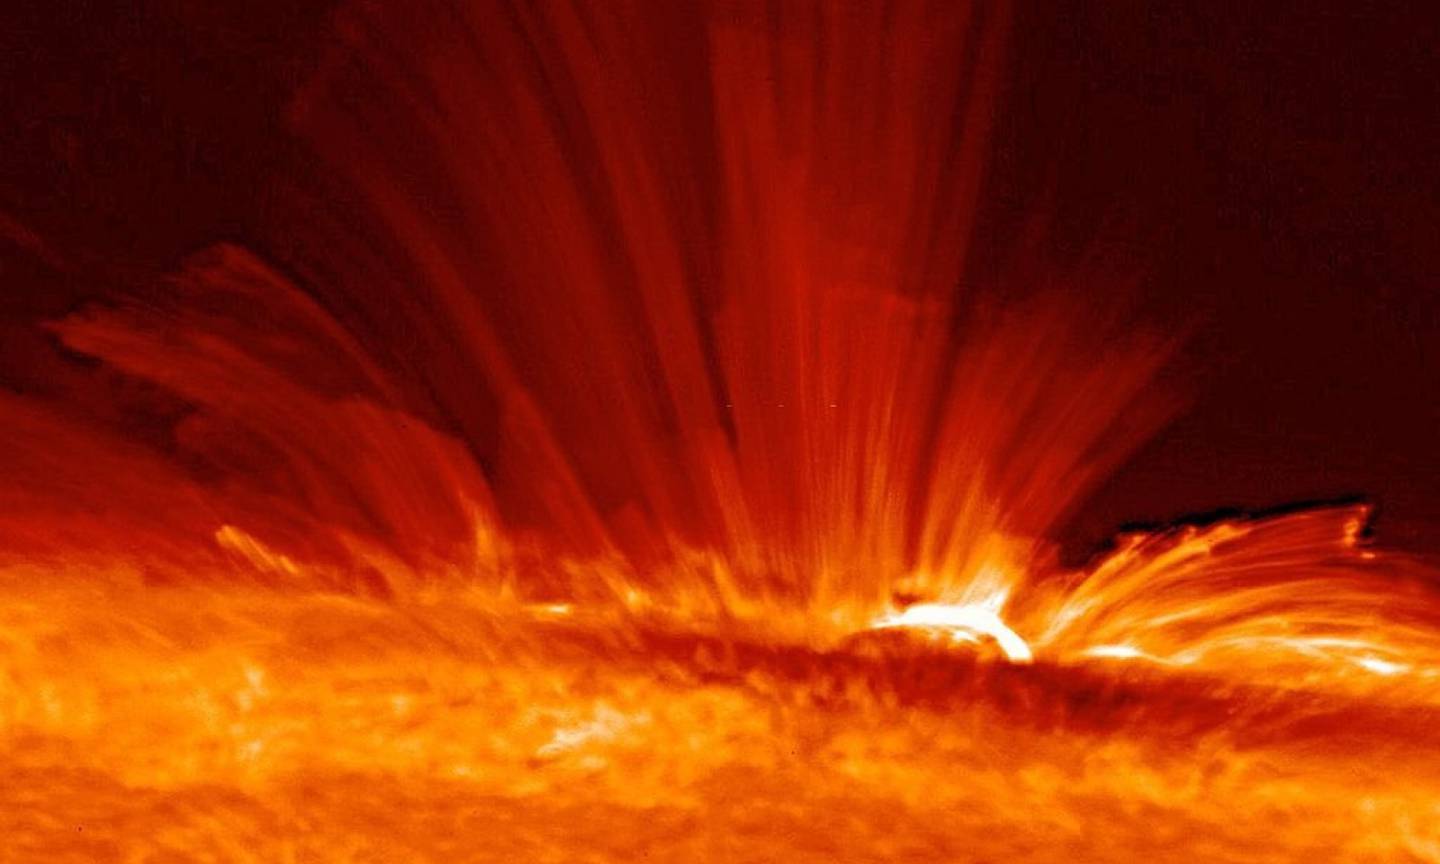 Mancha solar con serpentinas de gas (plasma) súper caliente cargado eléctricamente desde la superficie del Sol